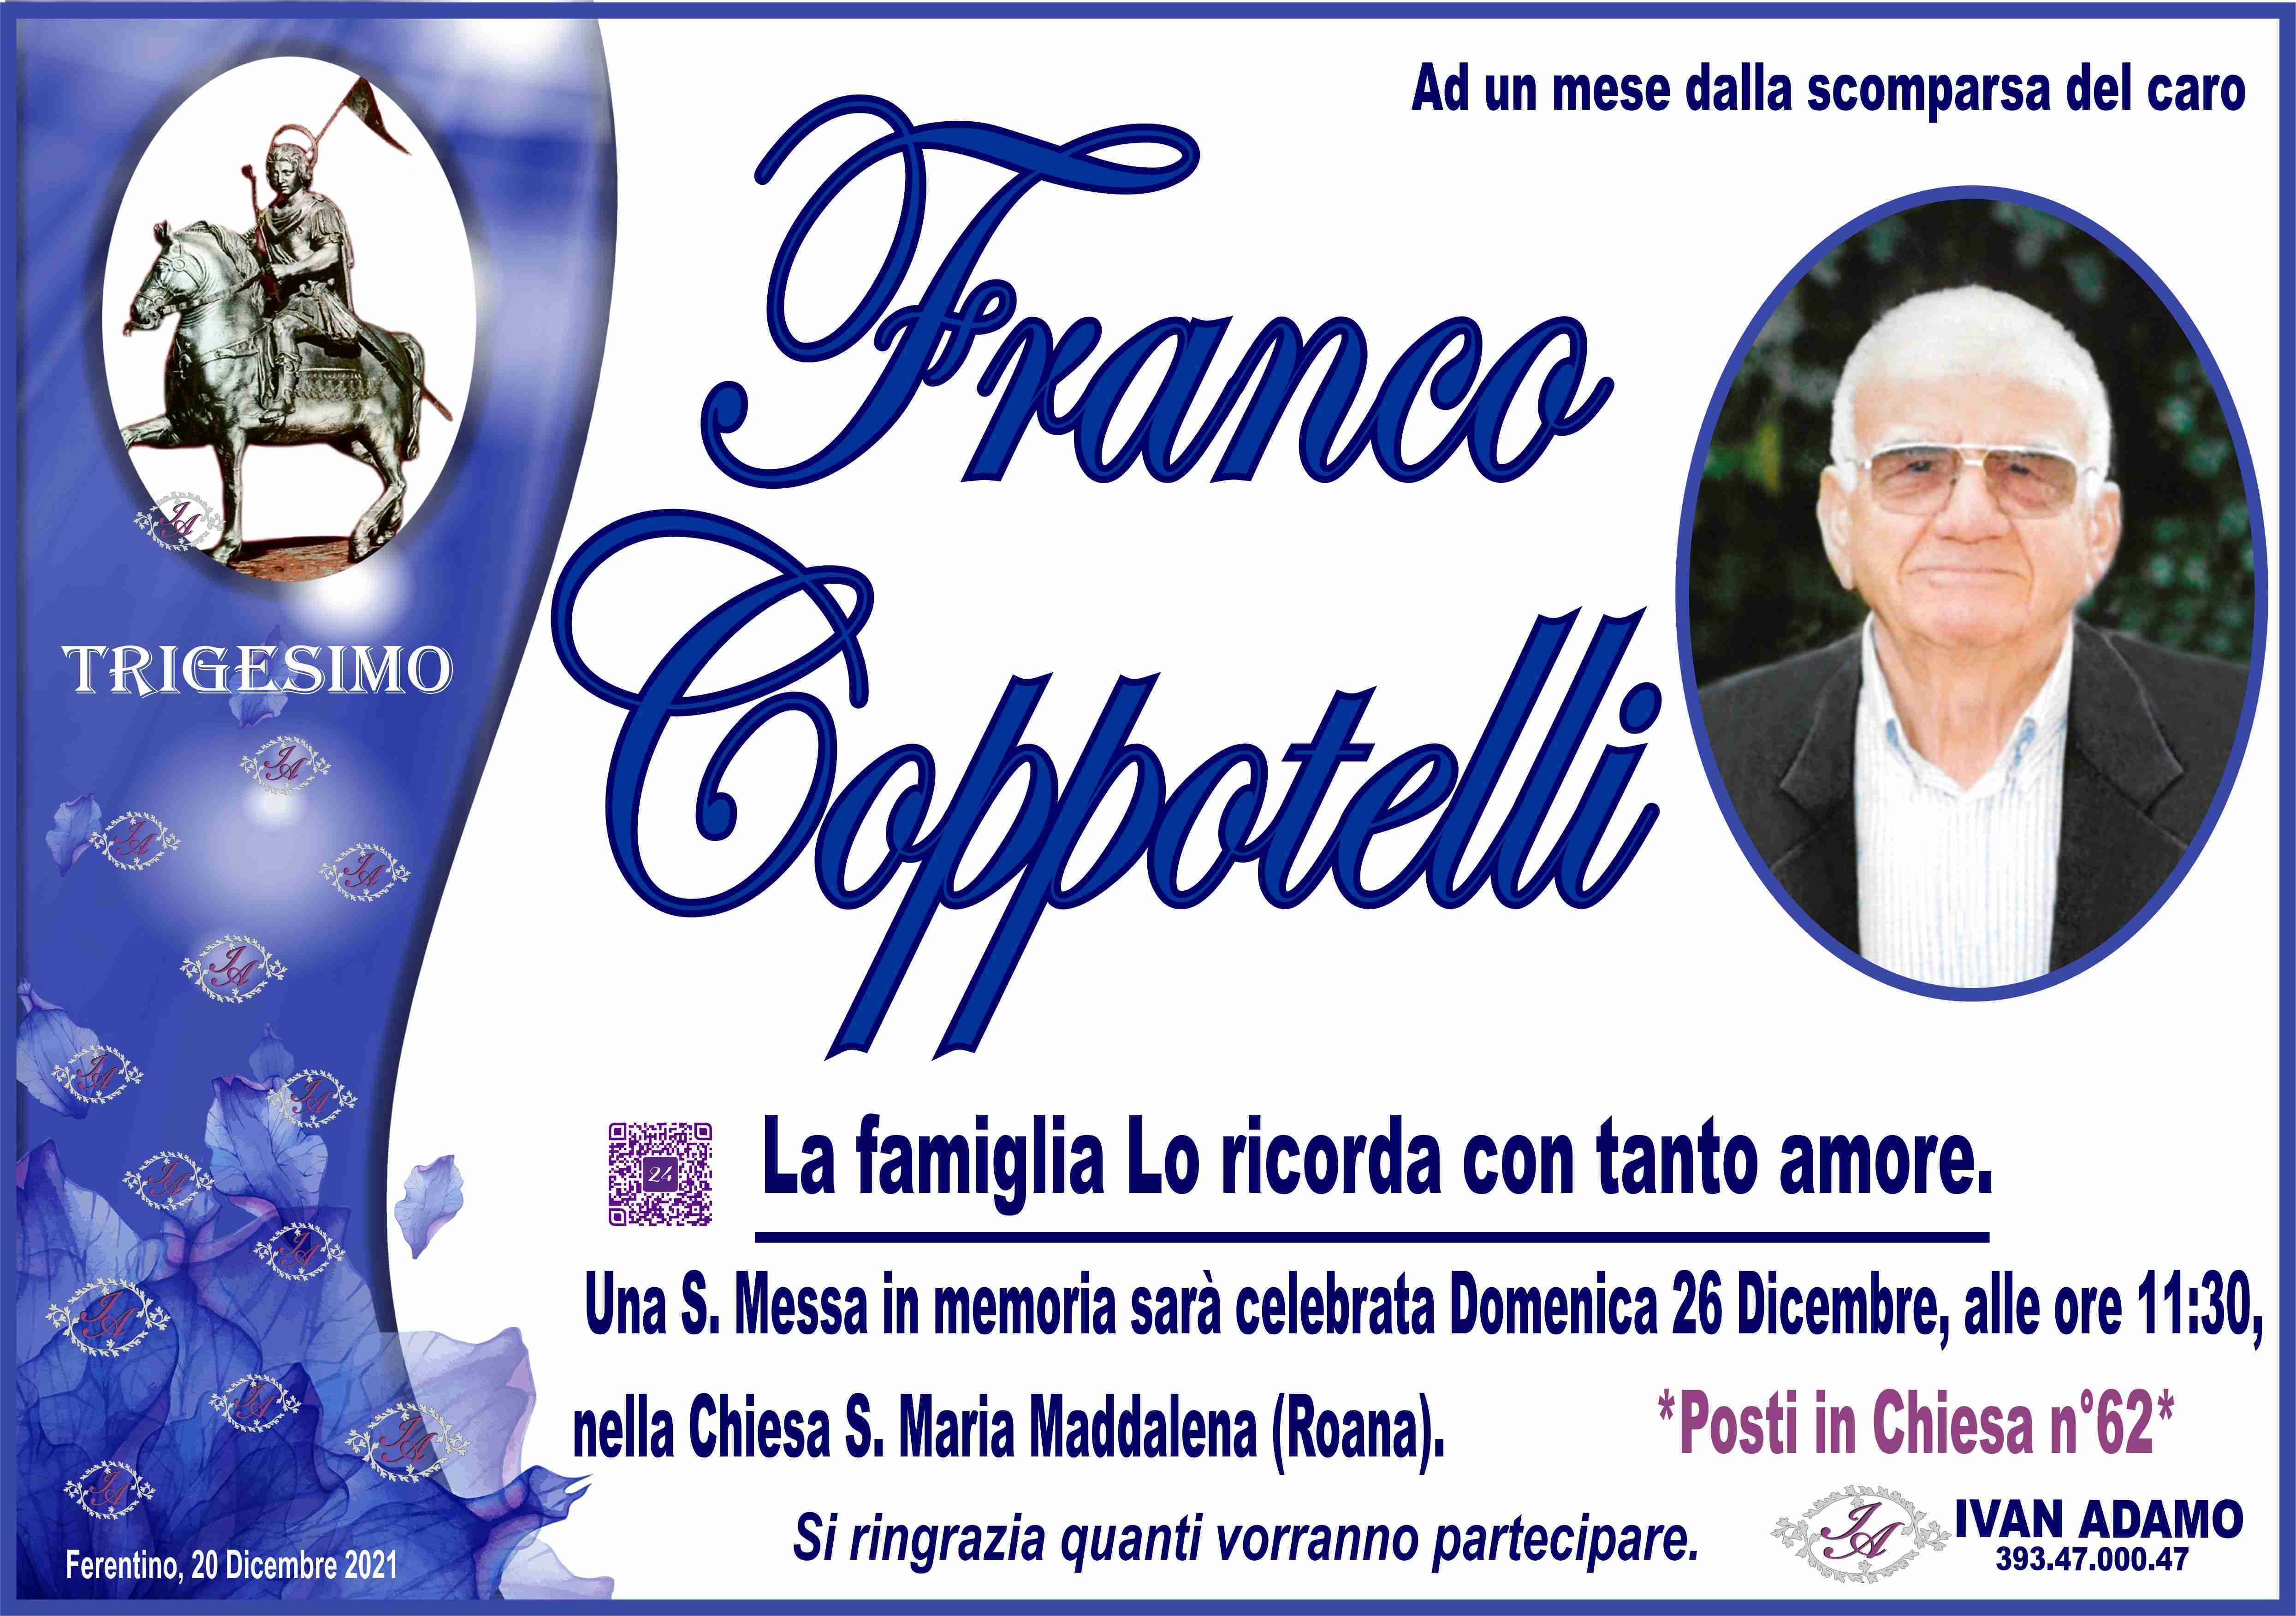 Franco Coppotelli